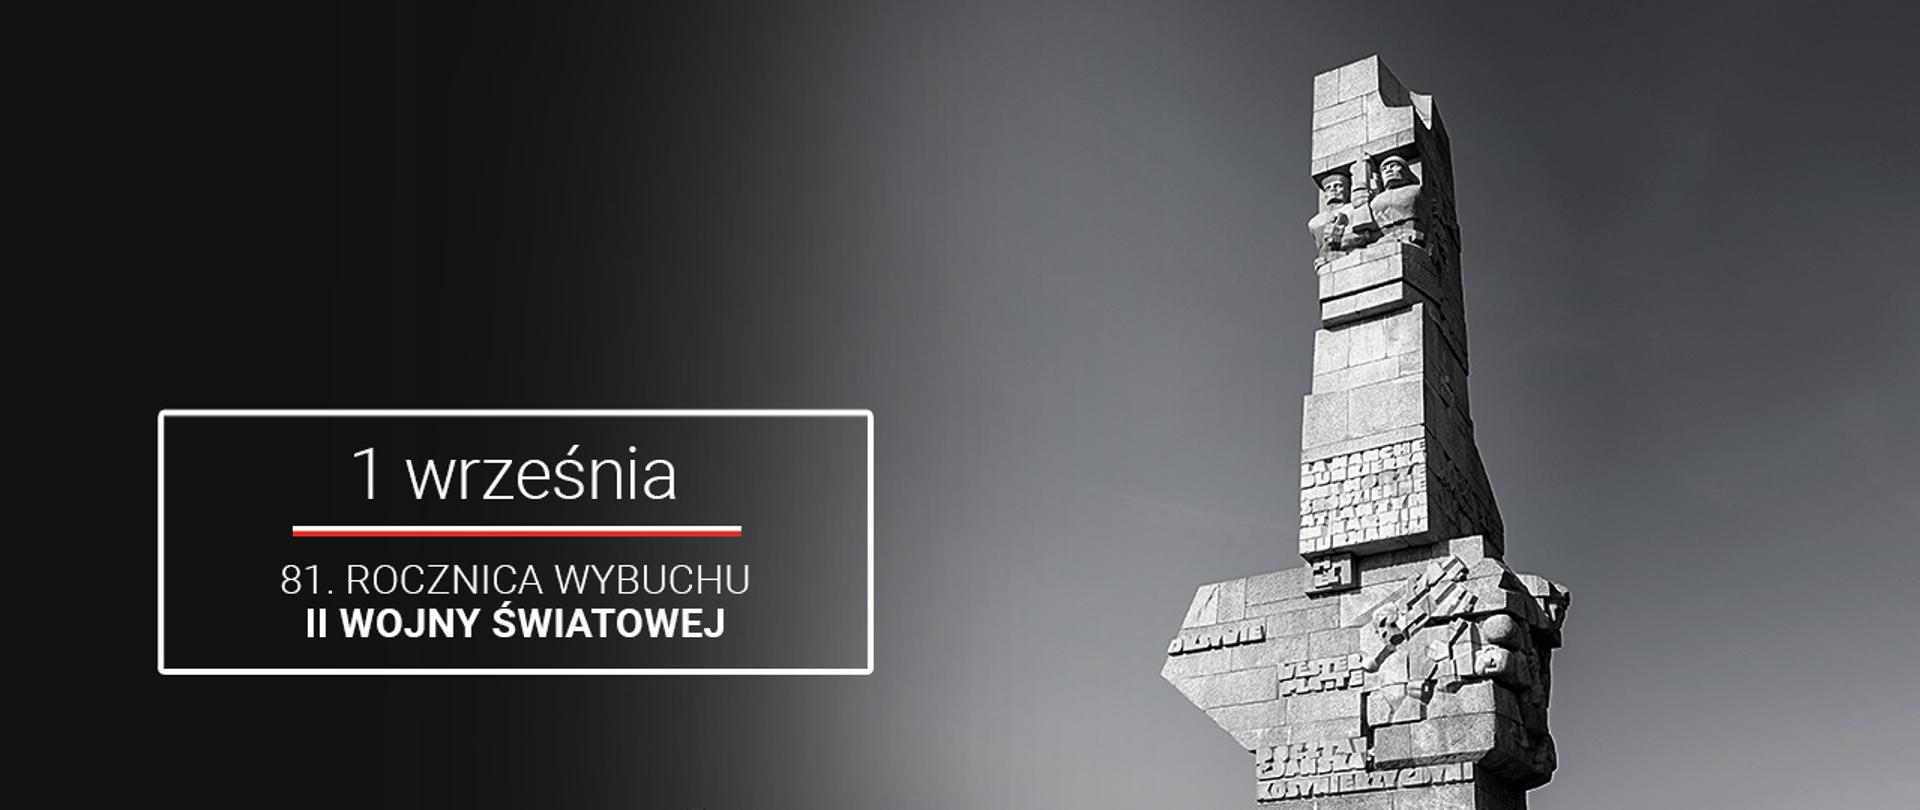 Grafika okazjonalna. Tło stanowi zdjęcie Pomnika Obrońców Wybrzeża na półwyspie Westerplatte. W lewym dolnym rogu napis: 1 września. 81. rocznica wybuchu II wojny światowej 